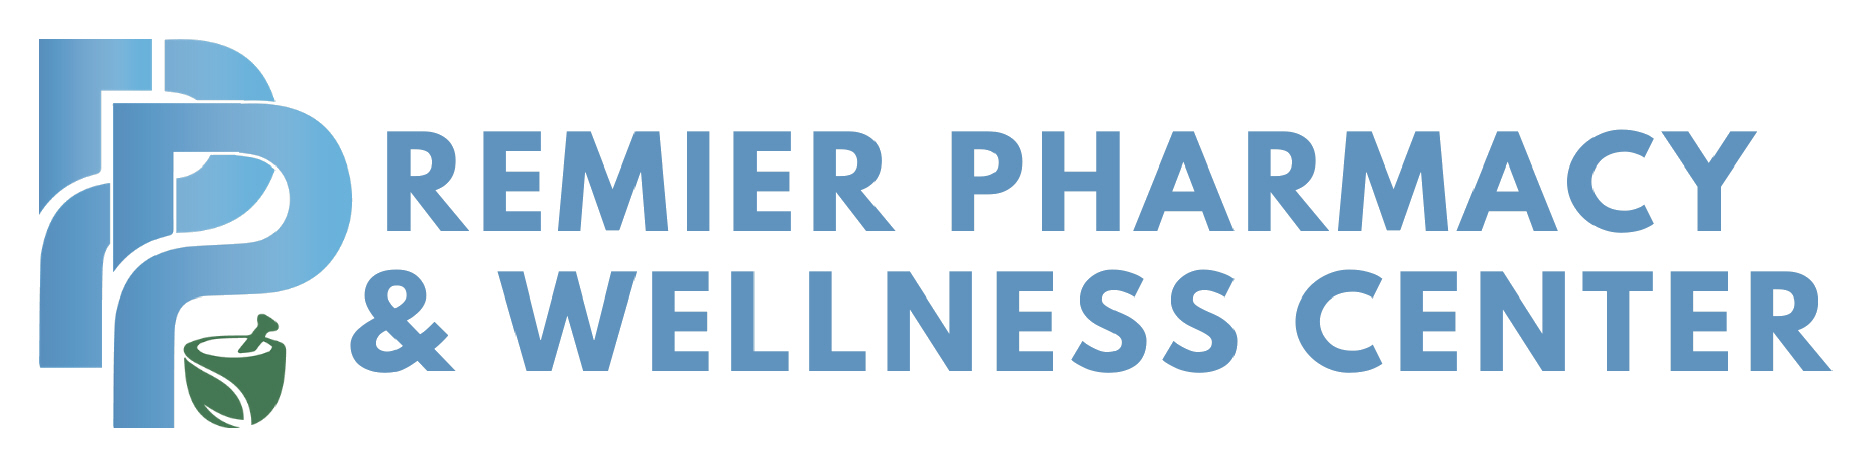 Premier Pharmacy & Wellness Center